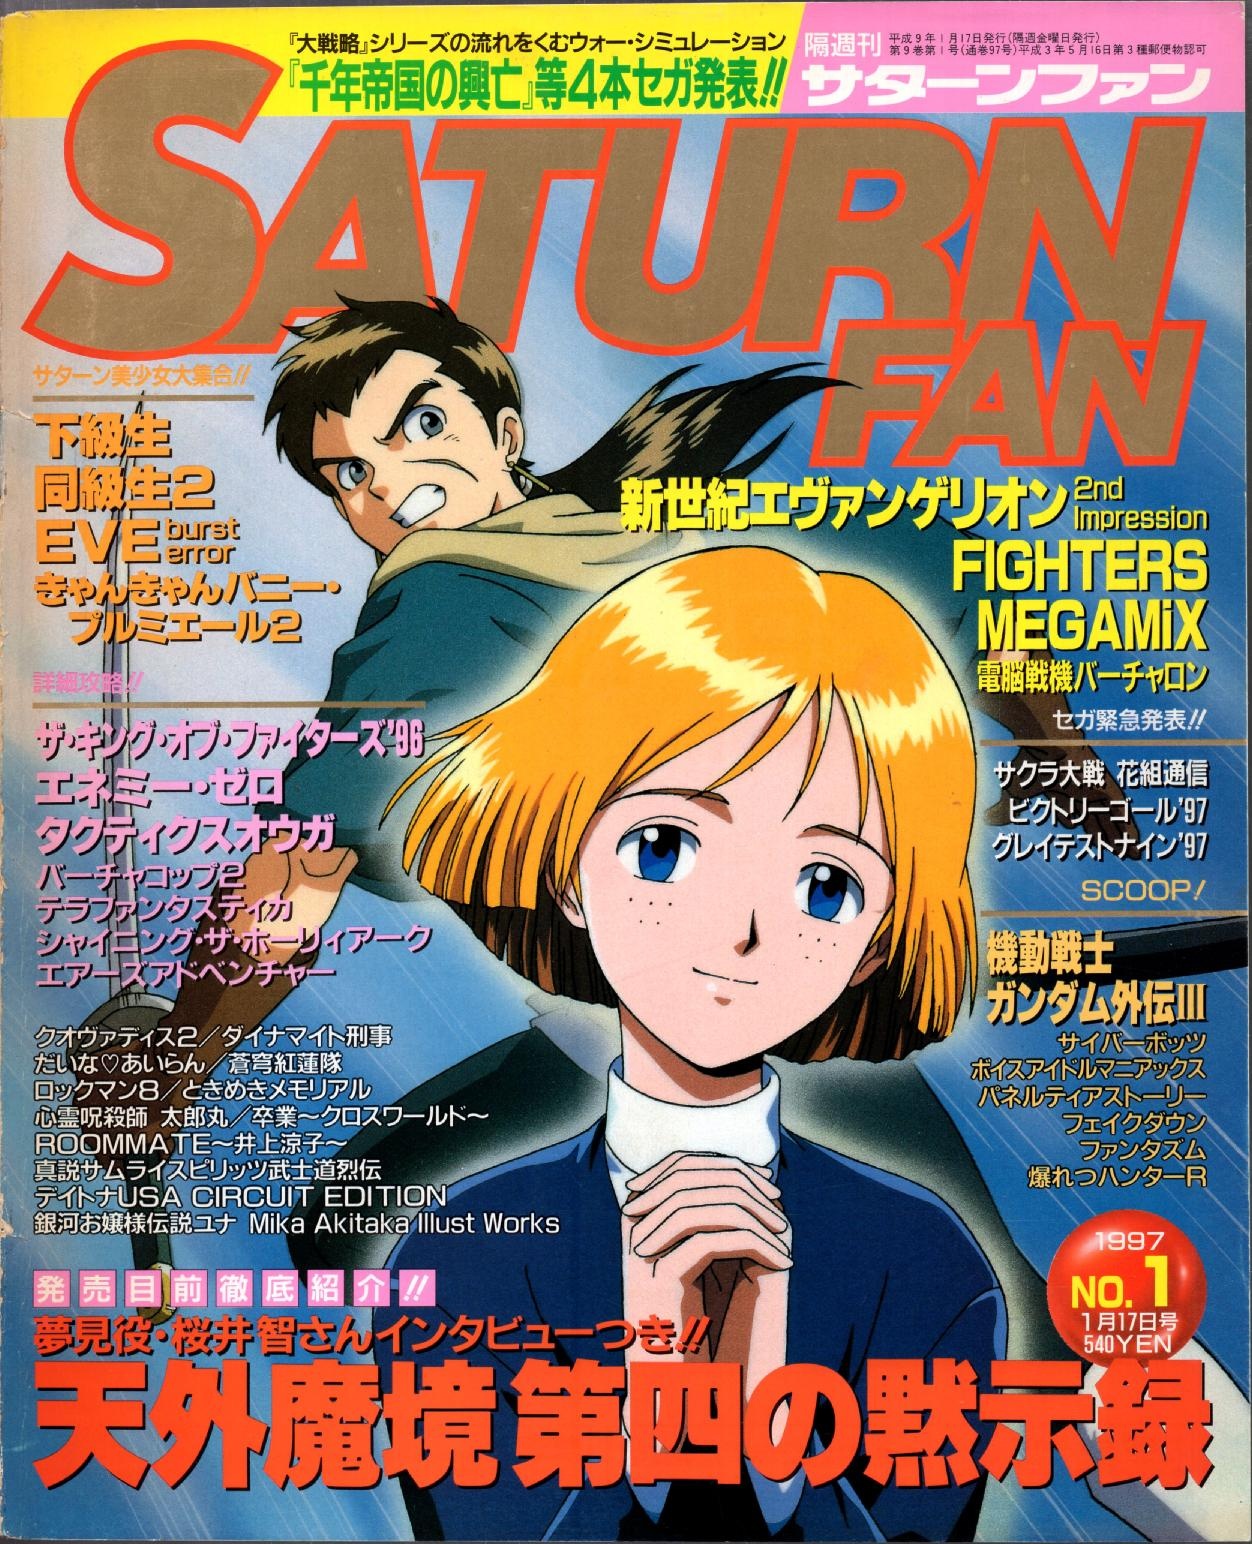 SaturnFan JP 1997-01 19970117.pdf